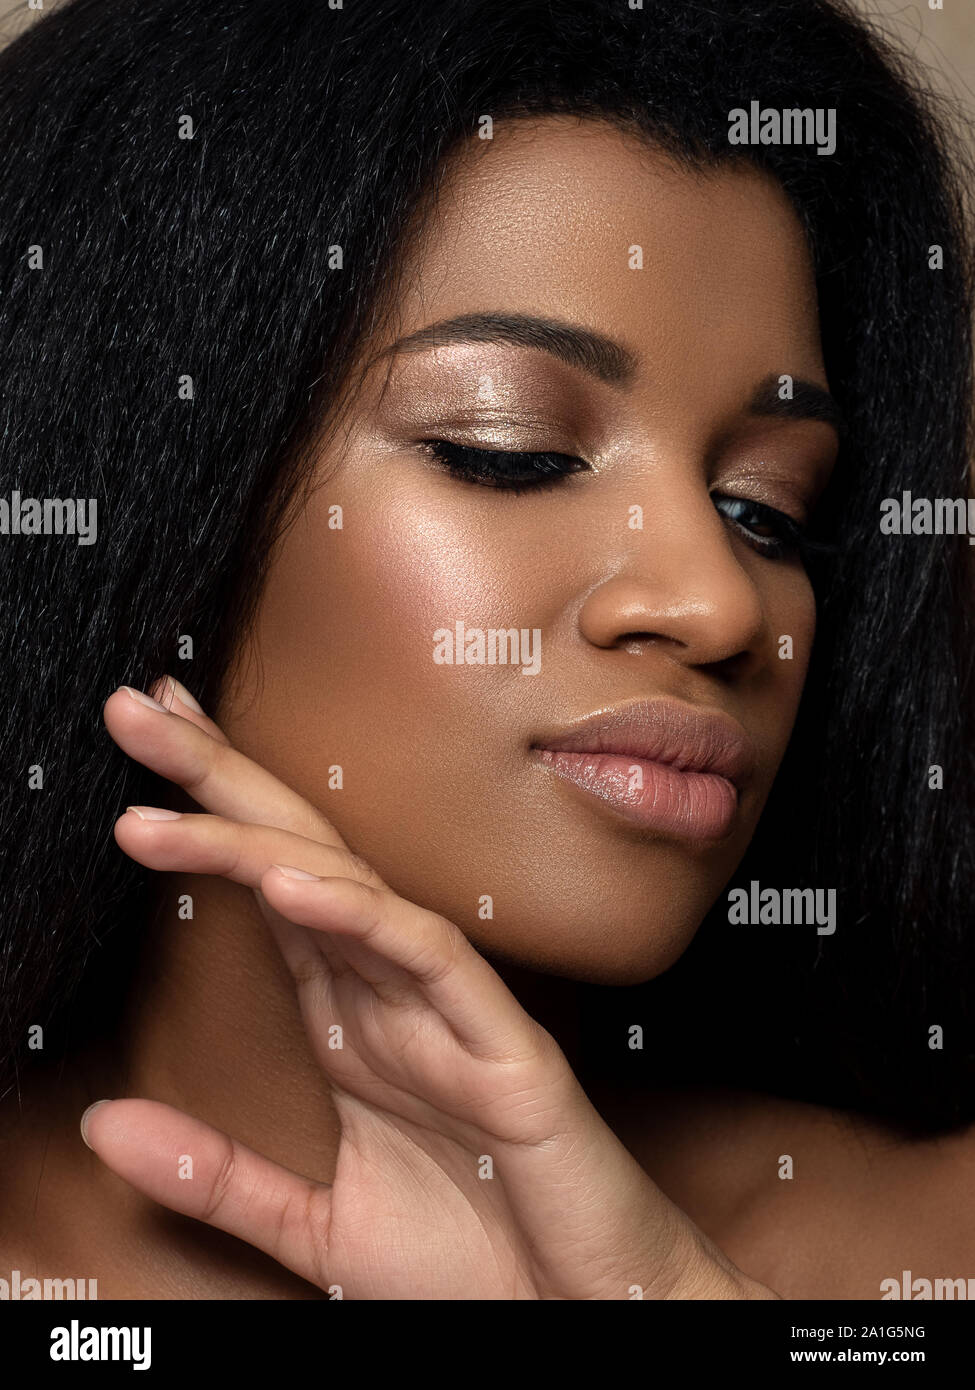 Belle jeune femme noire touching her face Banque D'Images